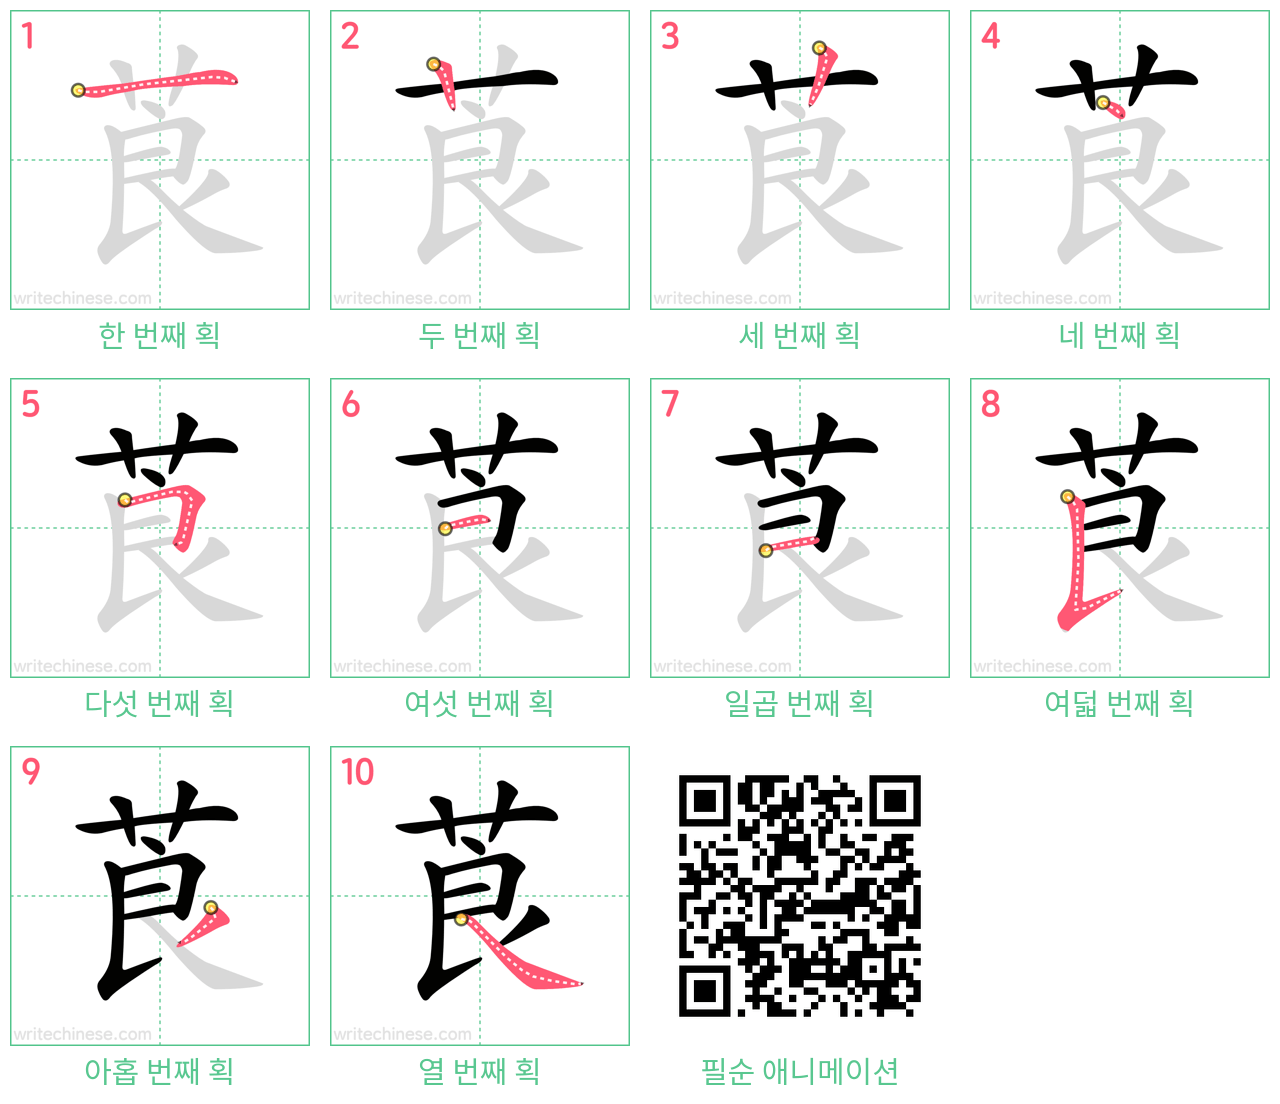 莨 step-by-step stroke order diagrams